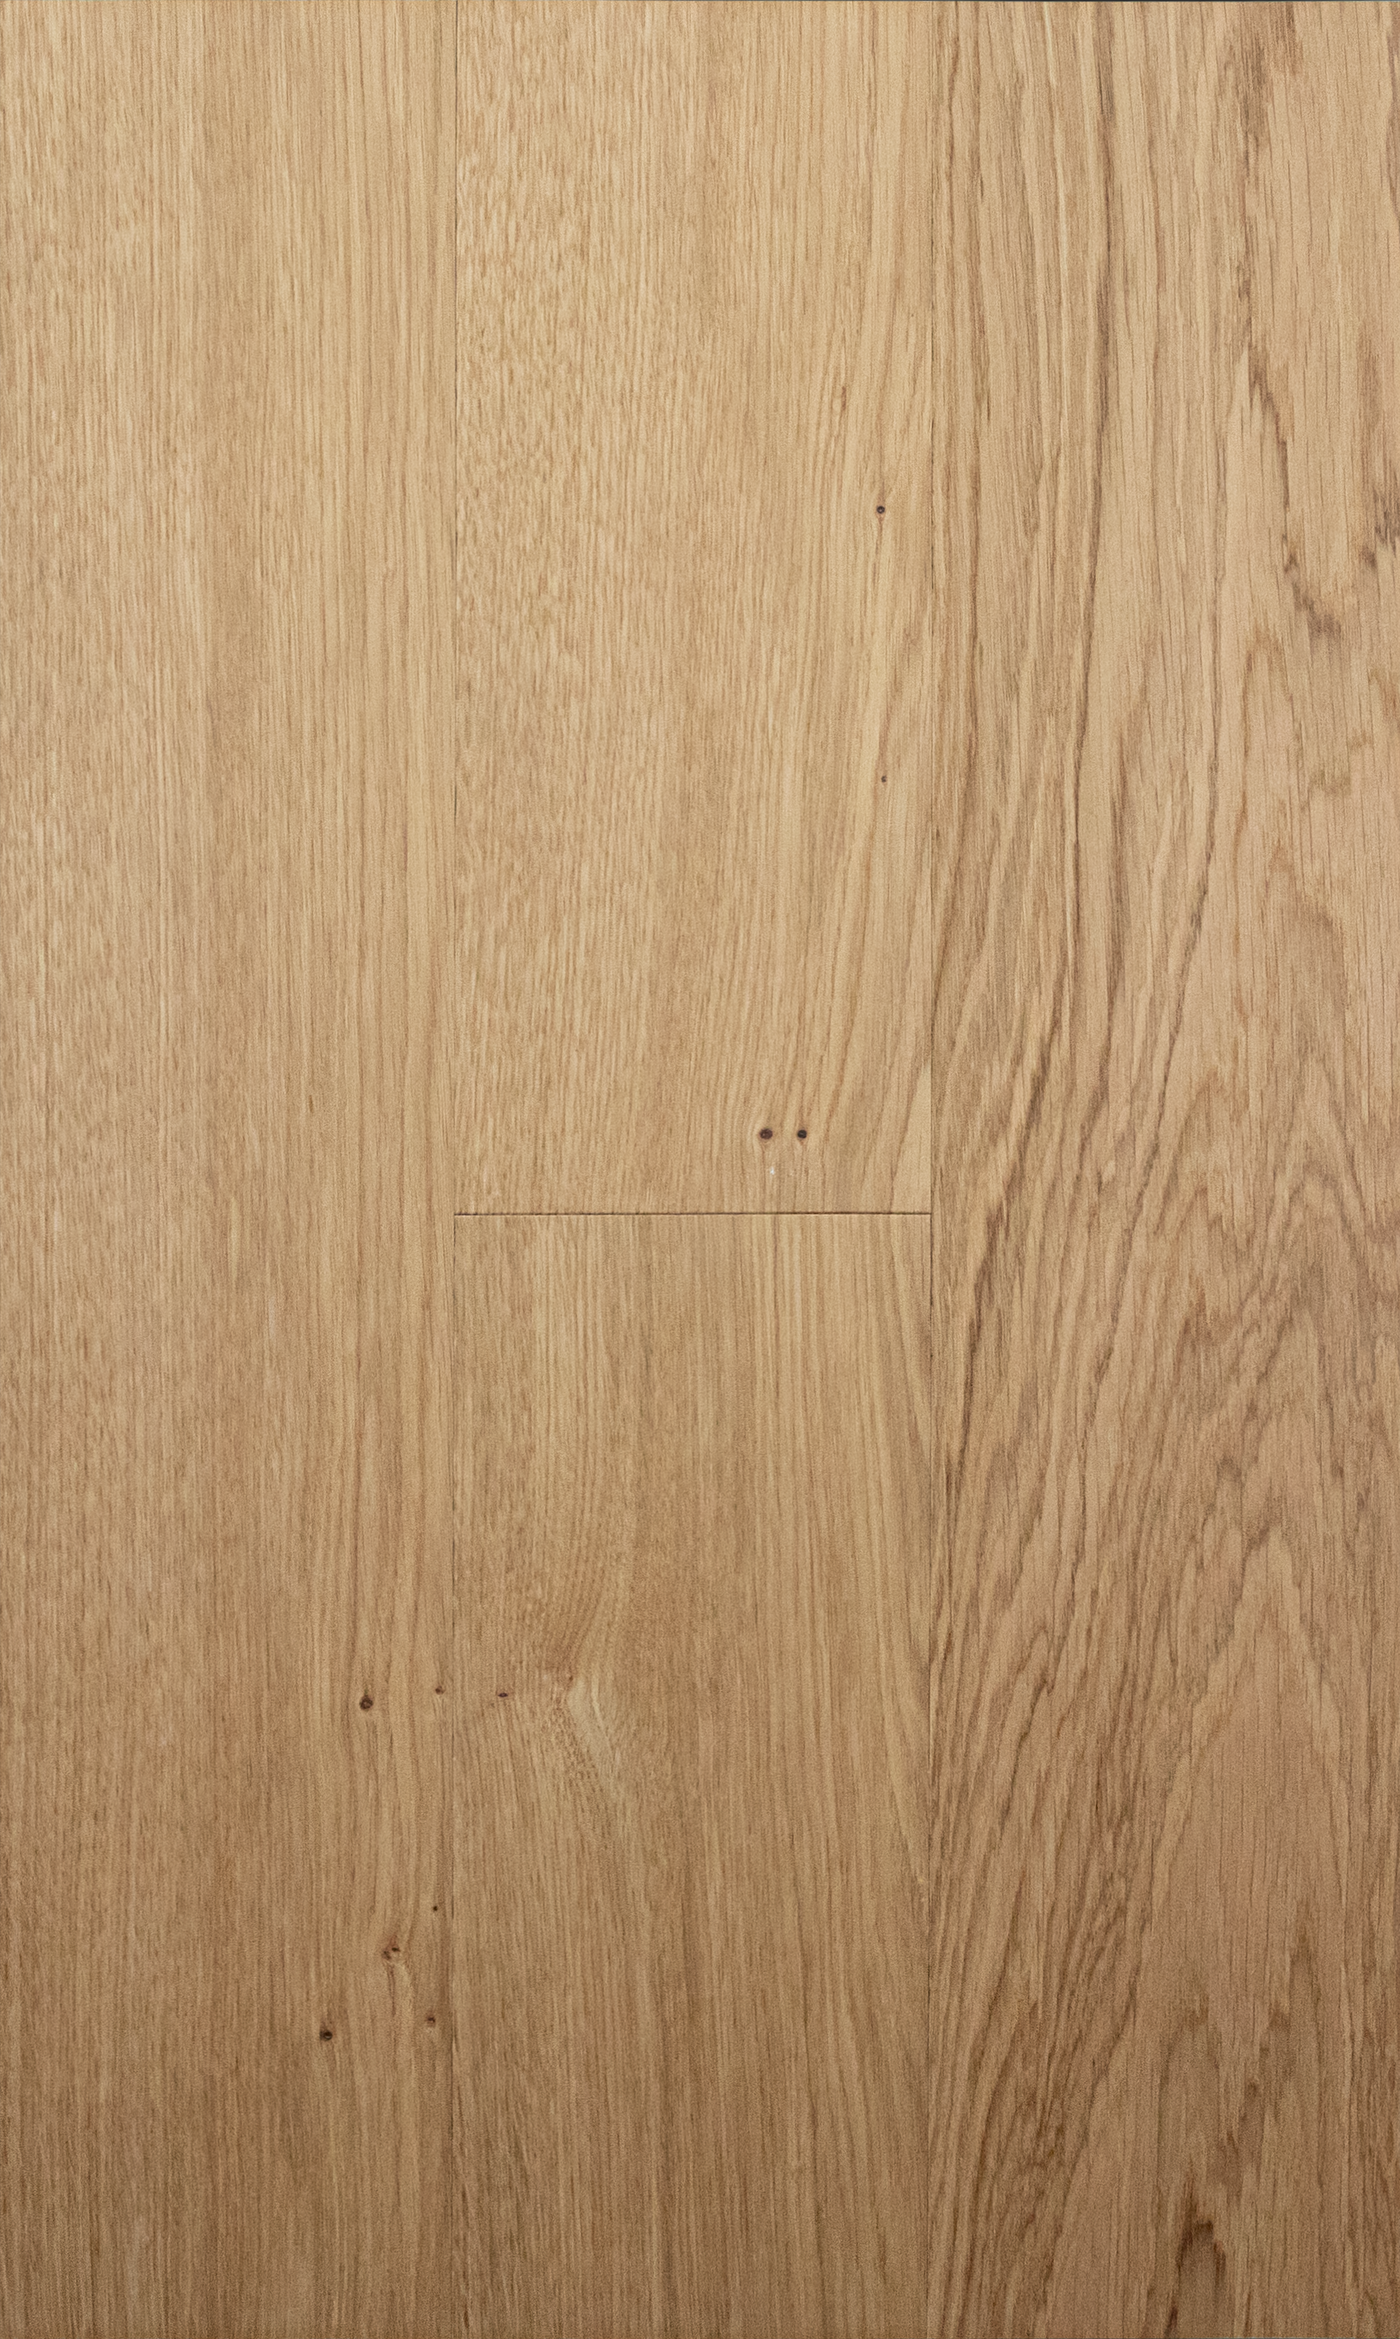 Overhead view of white oak waterproof wood flooring